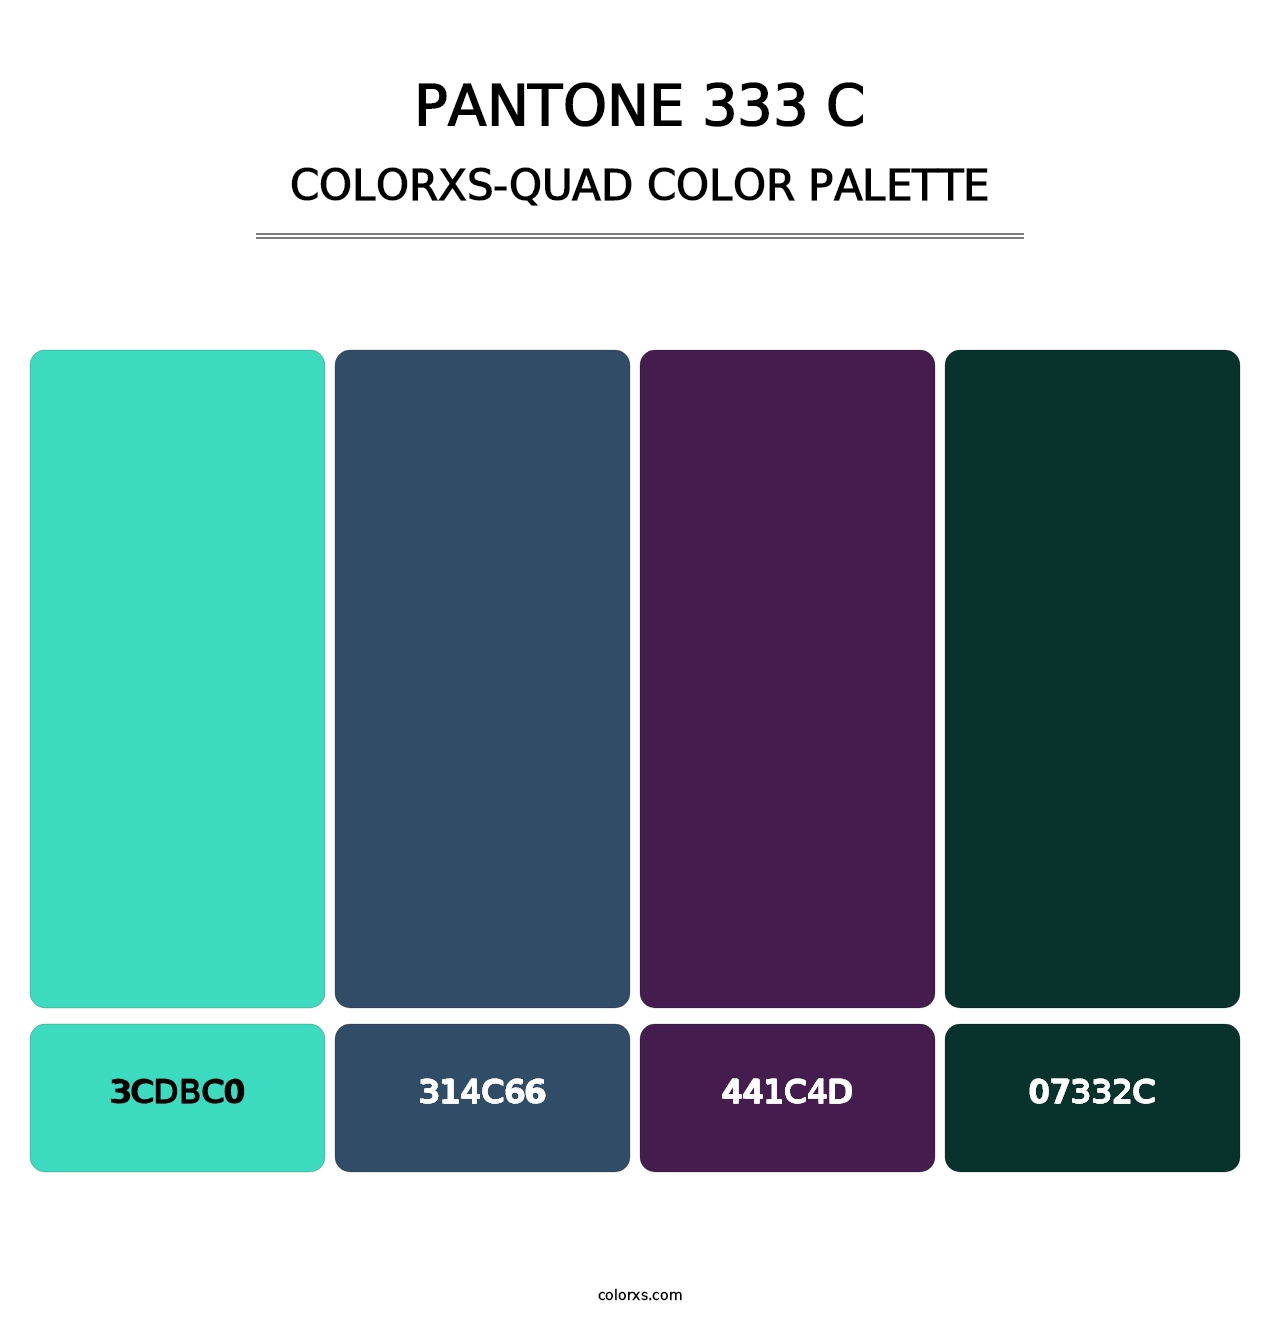 PANTONE 333 C - Colorxs Quad Palette